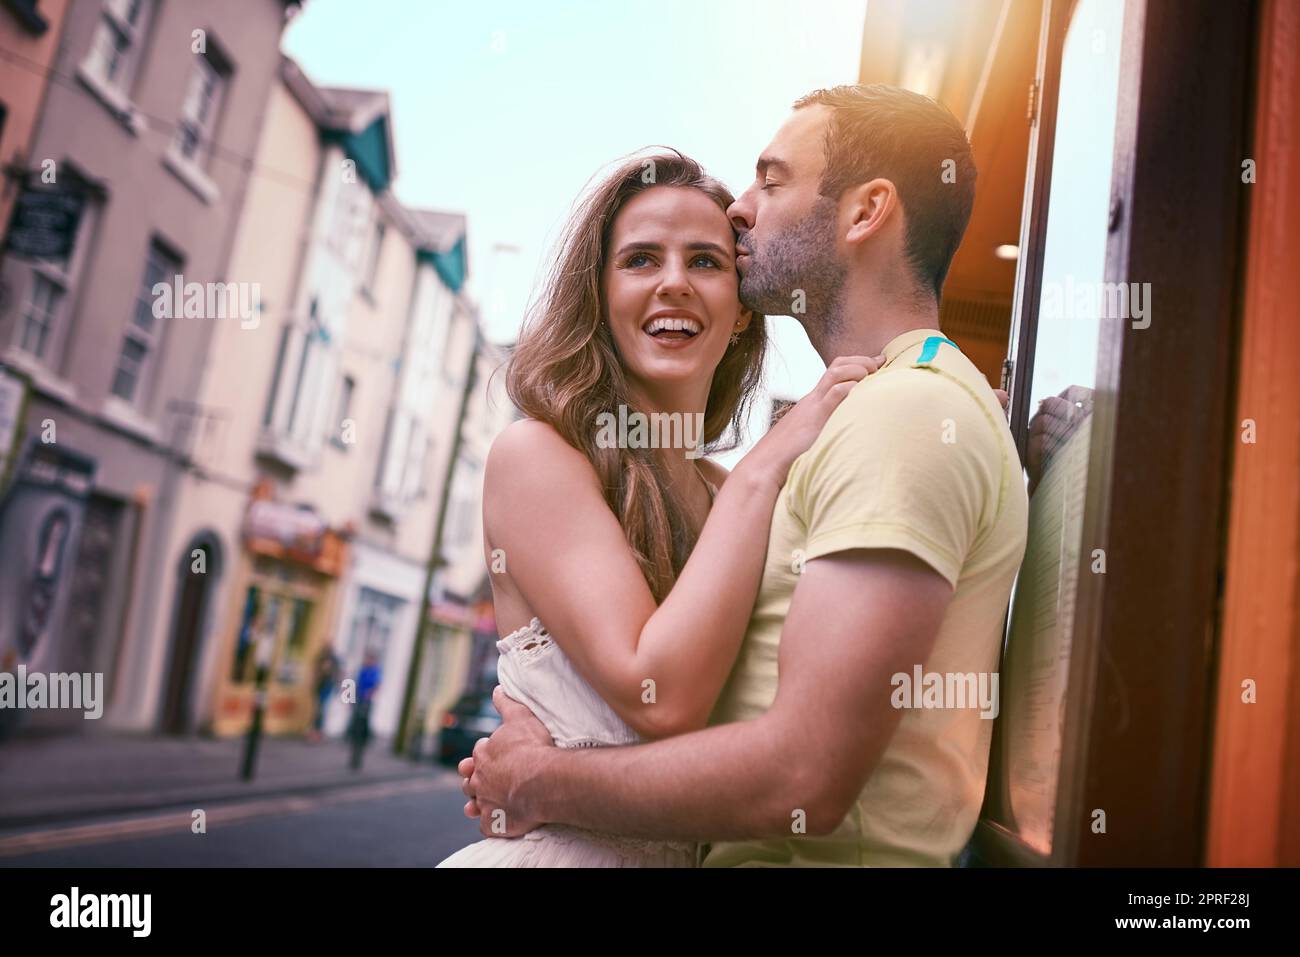 Sehen Sie die Welt mit dem, den Sie lieben. Ein glückliches junges Paar teilt einen liebevollen Moment, während Sie eine fremde Stadt erkunden. Stockfoto